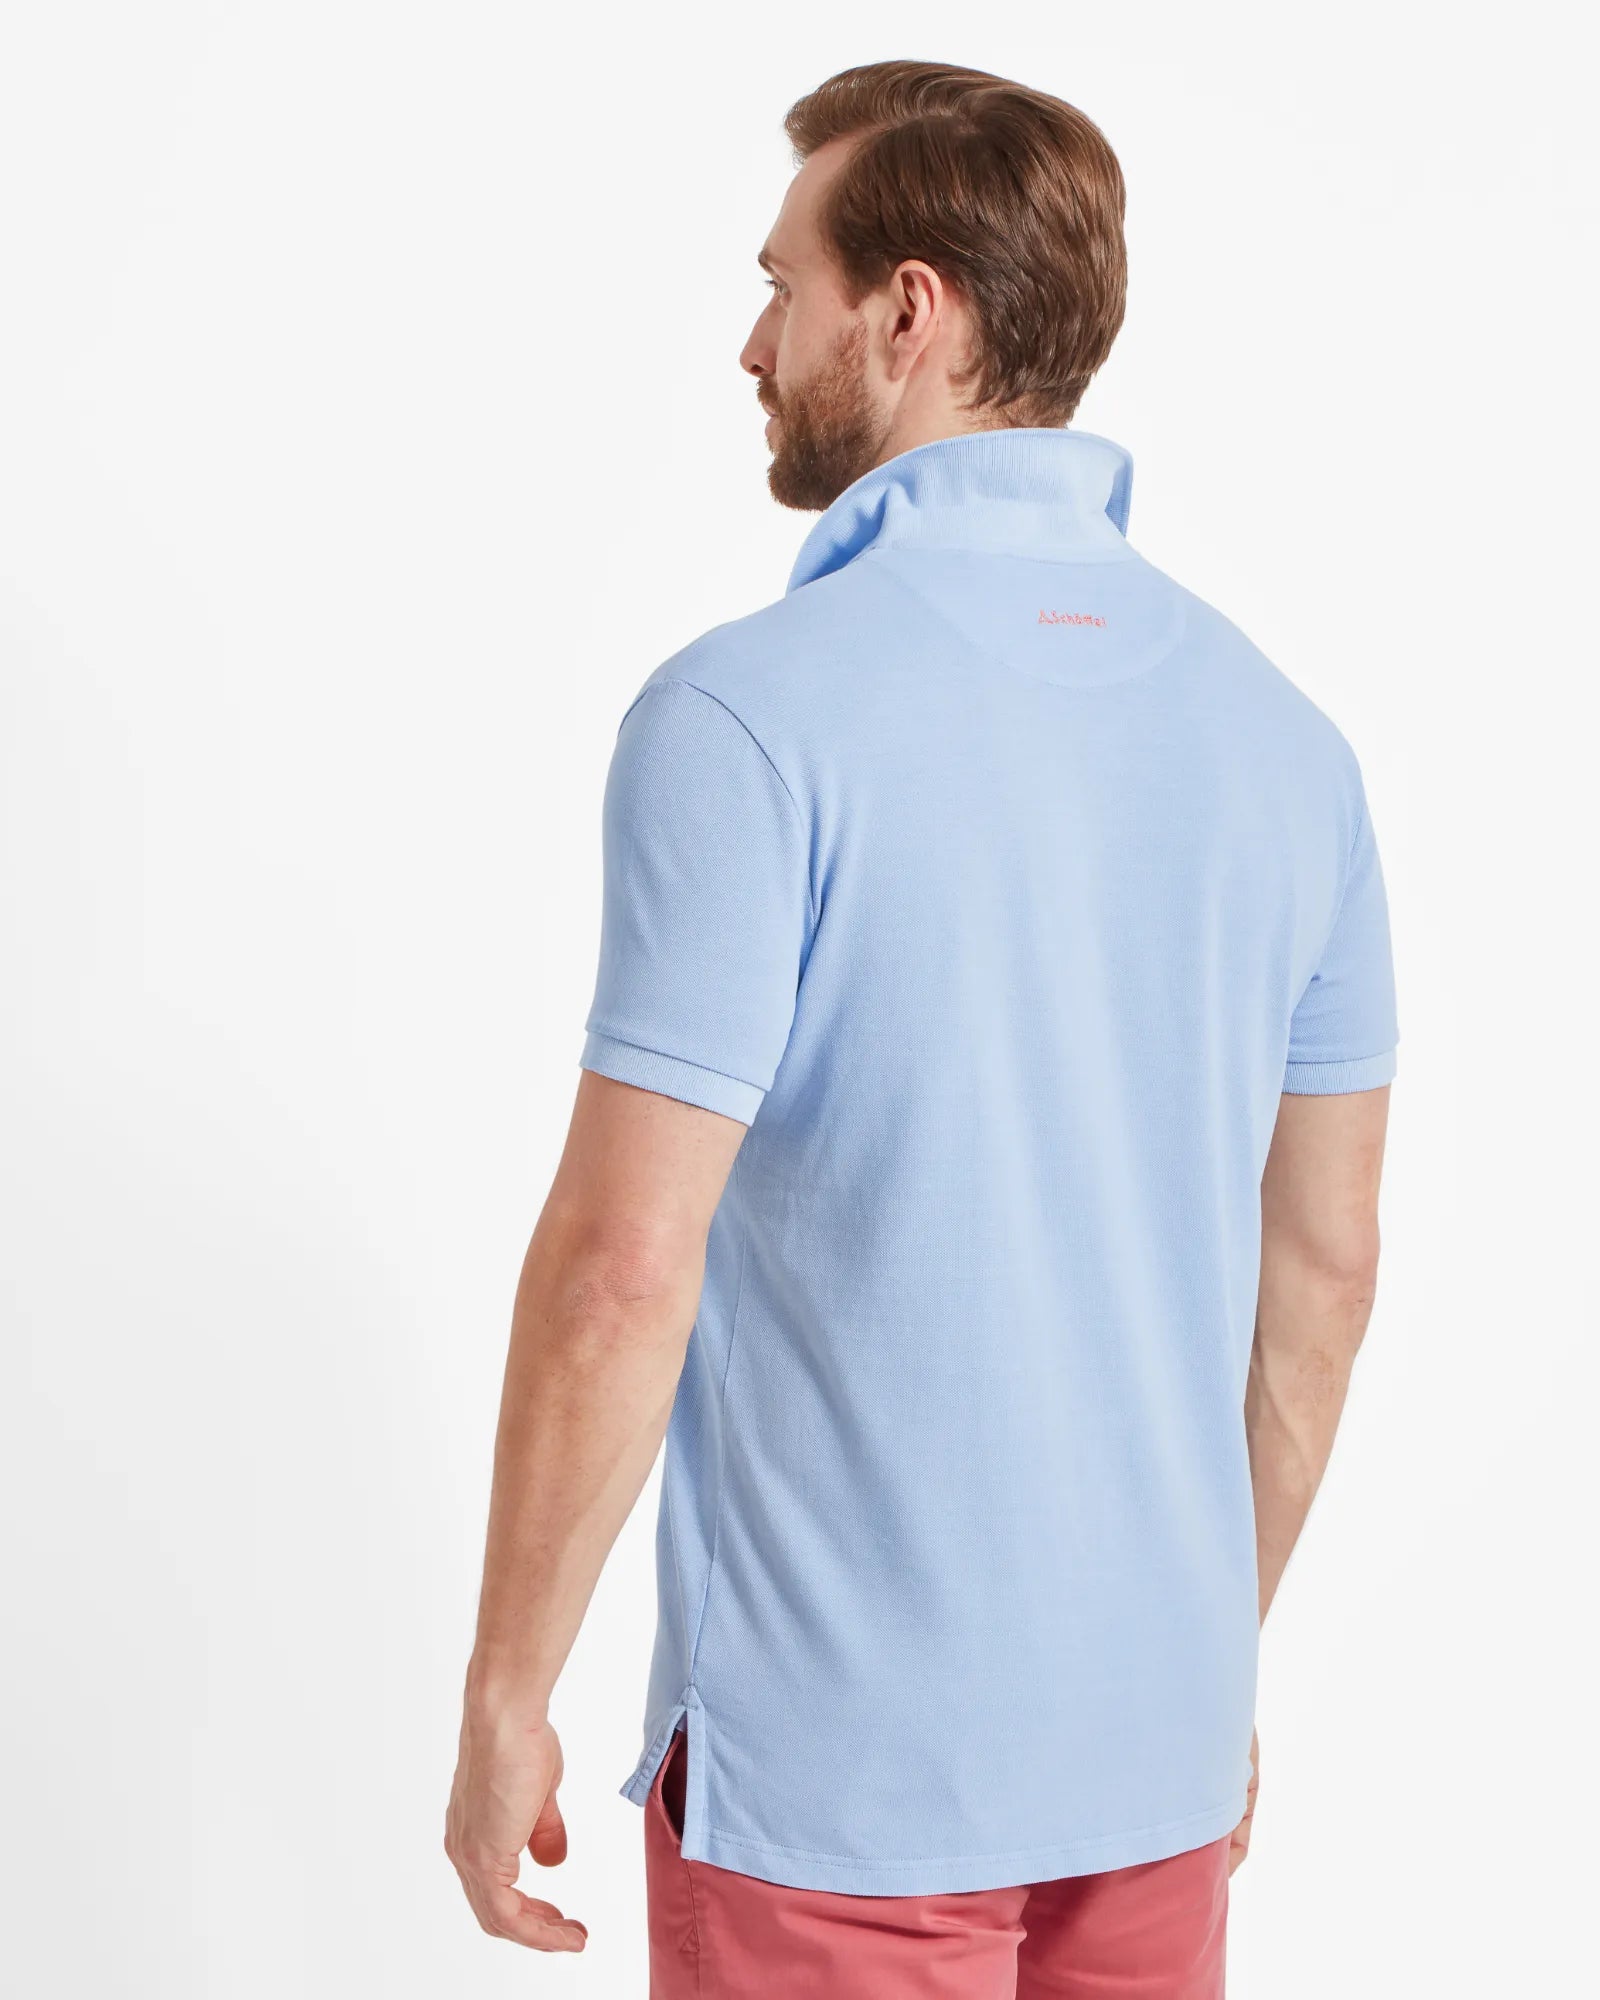 St Ives Pale Blue Pique Polo Shirt